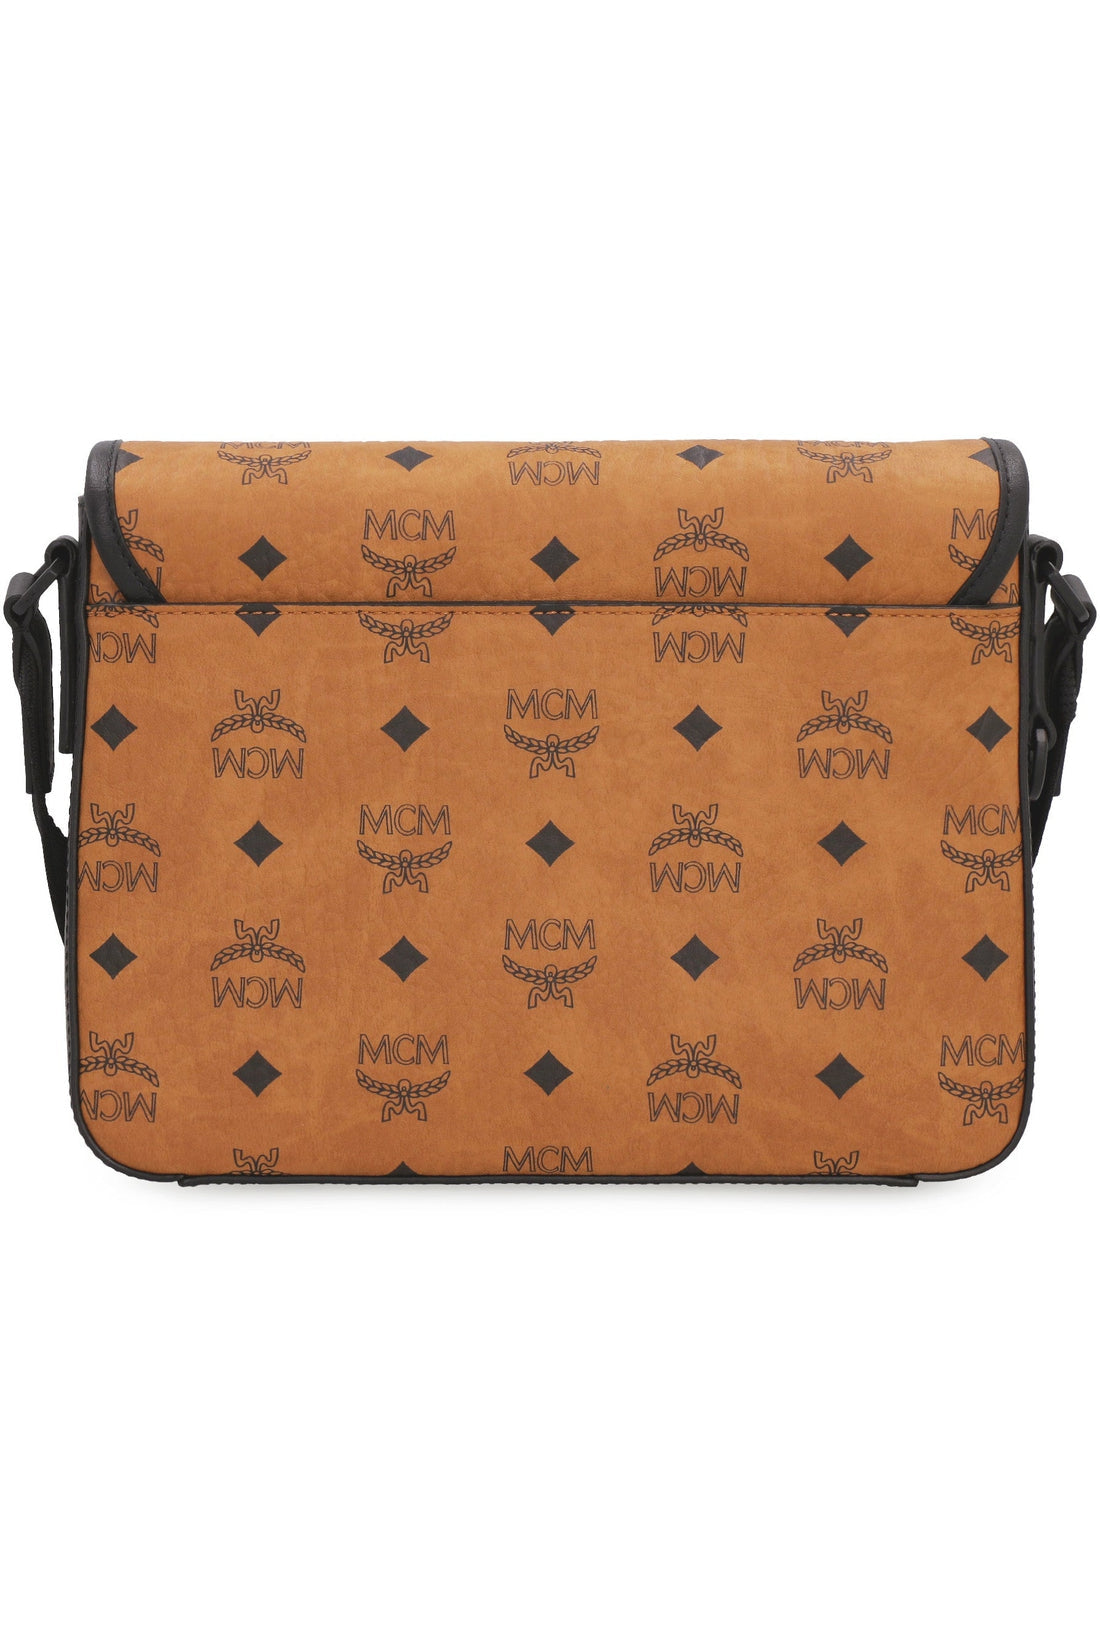 MCM-OUTLET-SALE-Klassik messenger bag with logo-ARCHIVIST